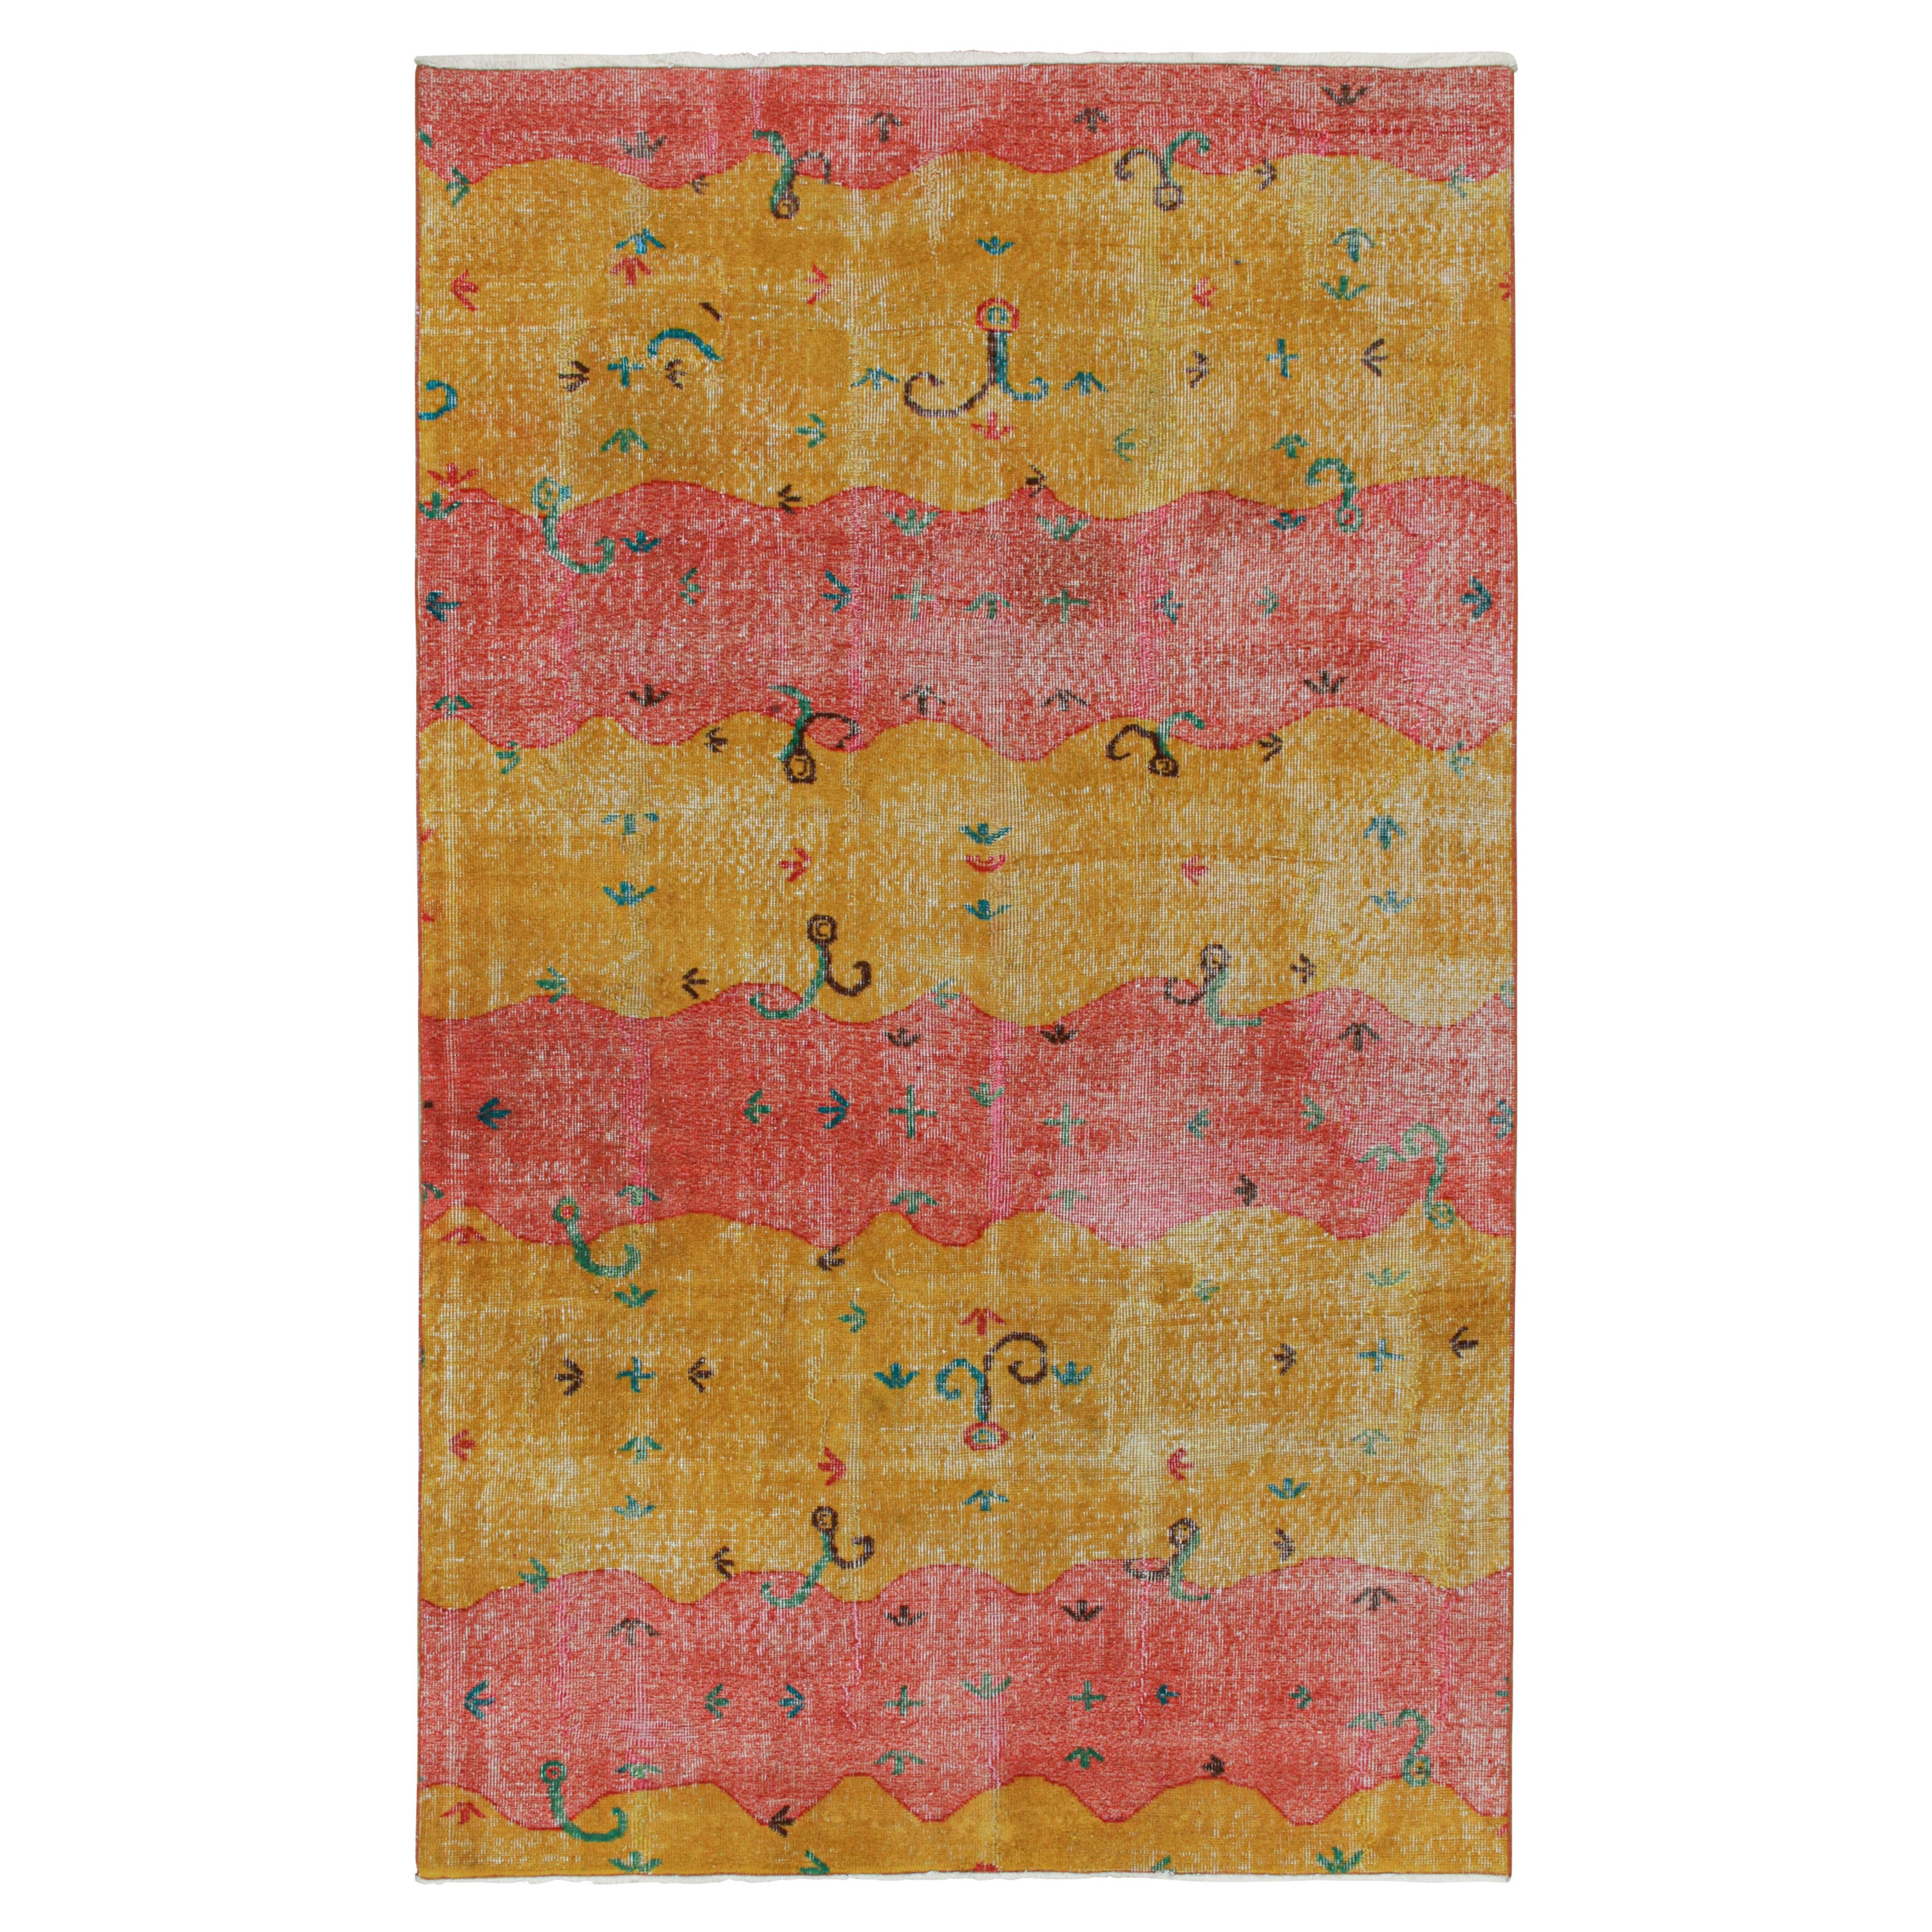 Vintage Zeki Müren Rug in Red & Gold with Vibrant Patterns by Rug & Kilim